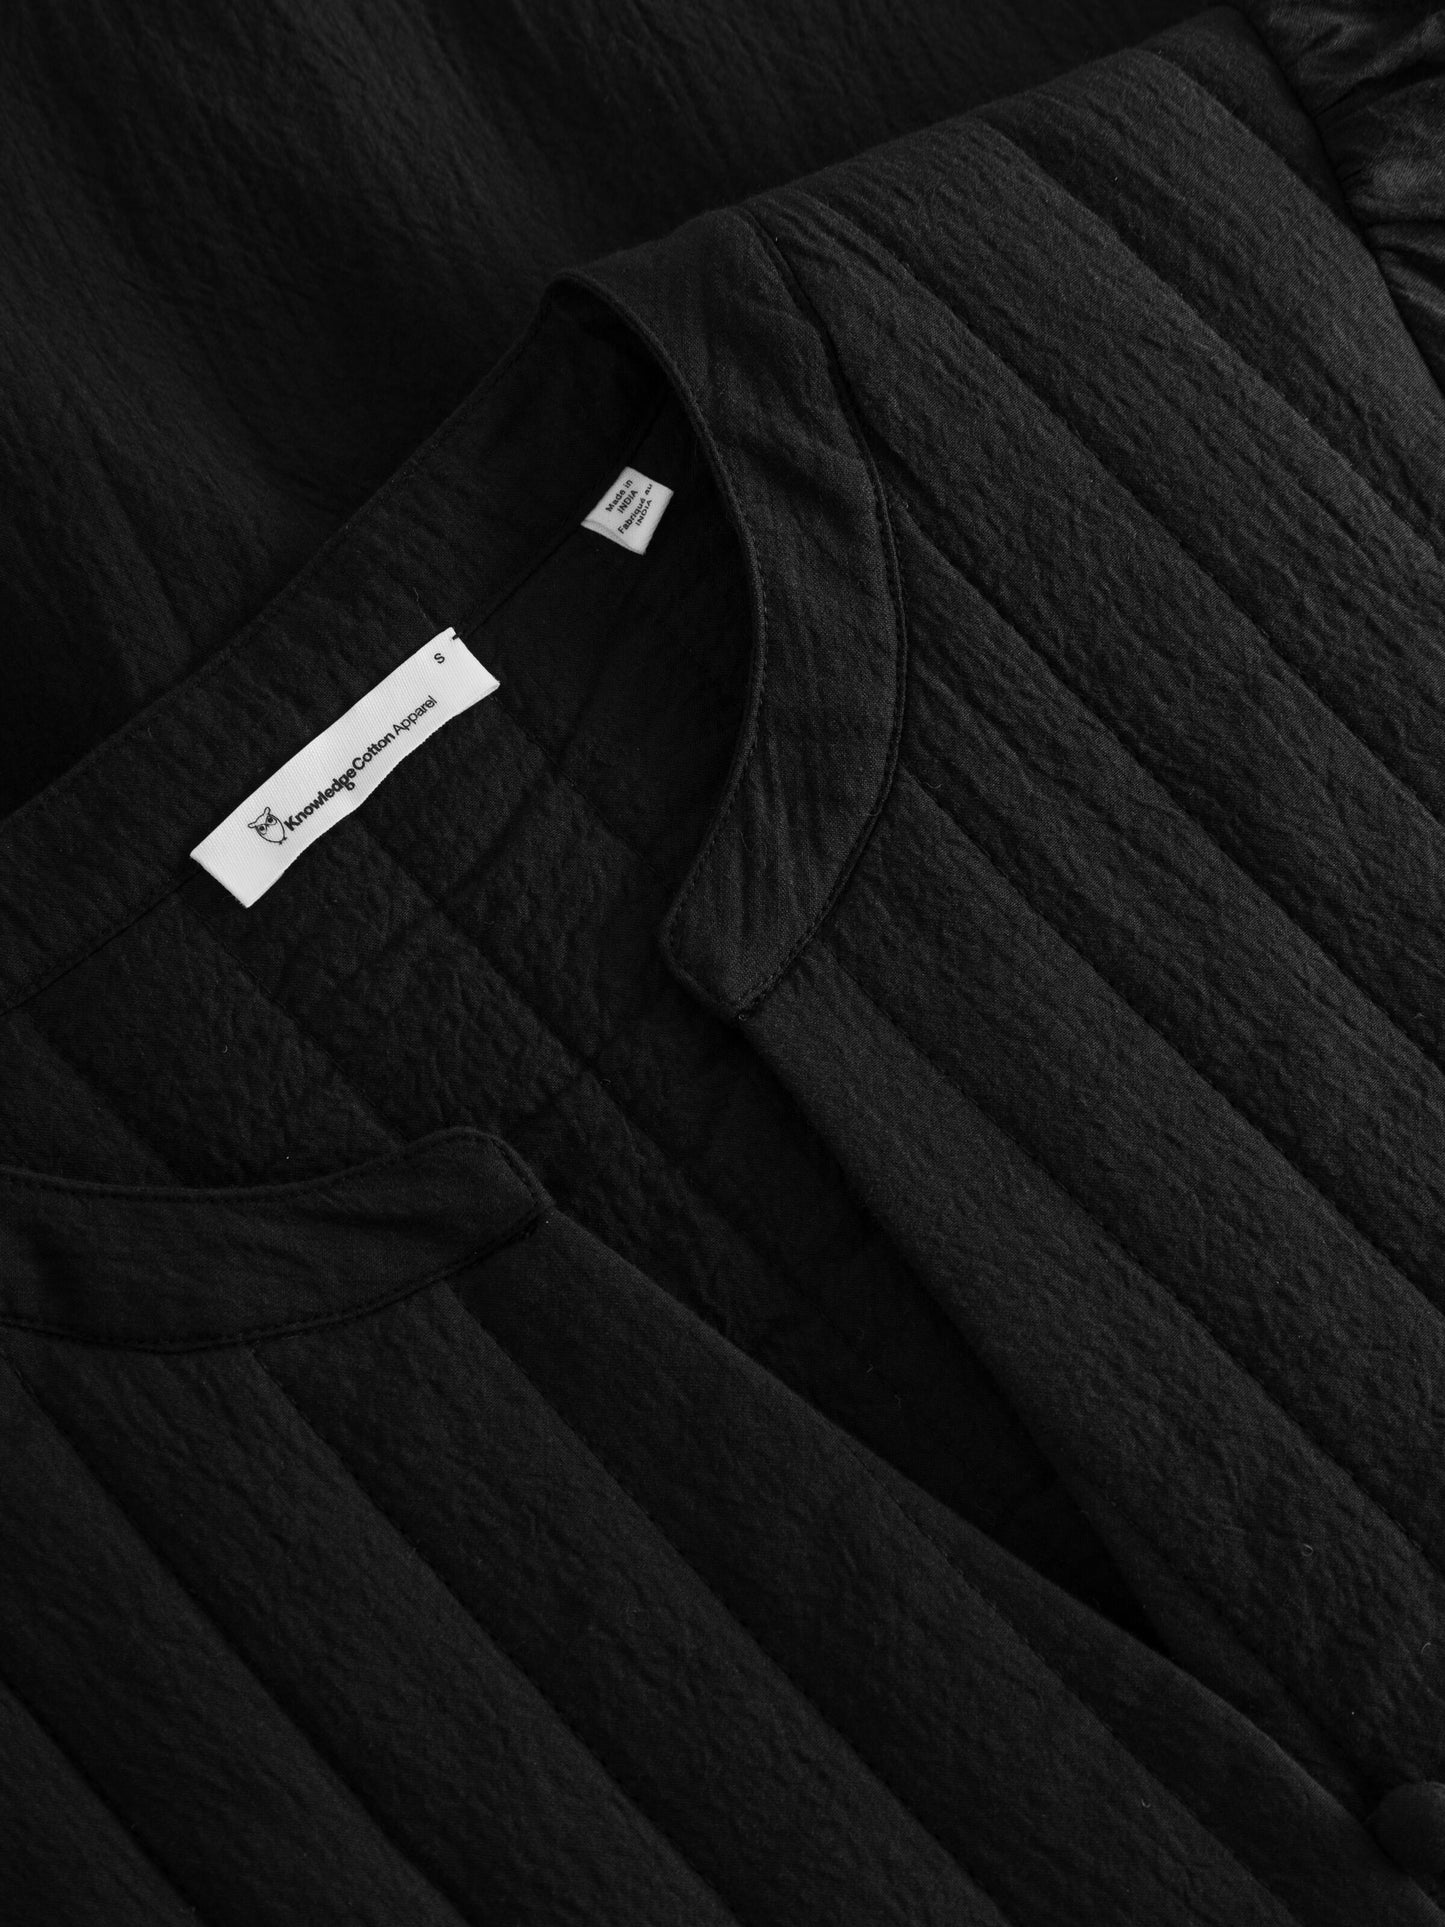 Kleid Heavy seersucker A-shape midi dress - Black Jet - KnowledgeCotton